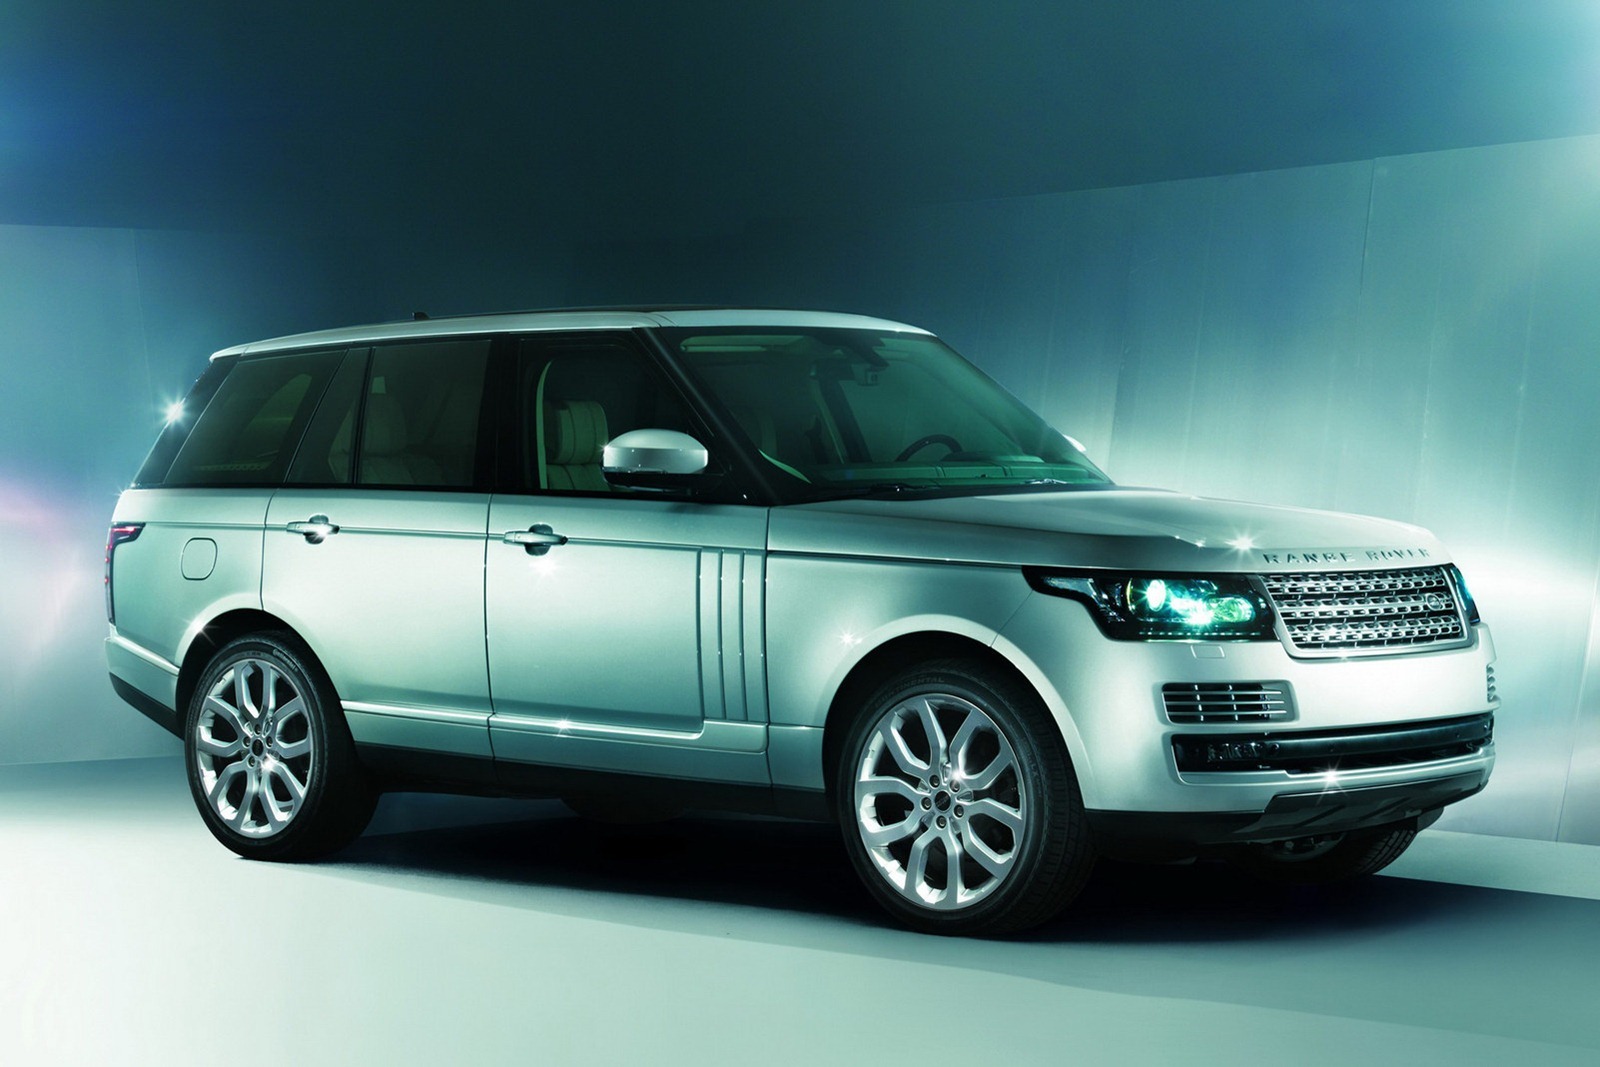 Noul Range Rover are caroserie autoportanta din aluminiu, masa fiind mai redusa cu 420 kg